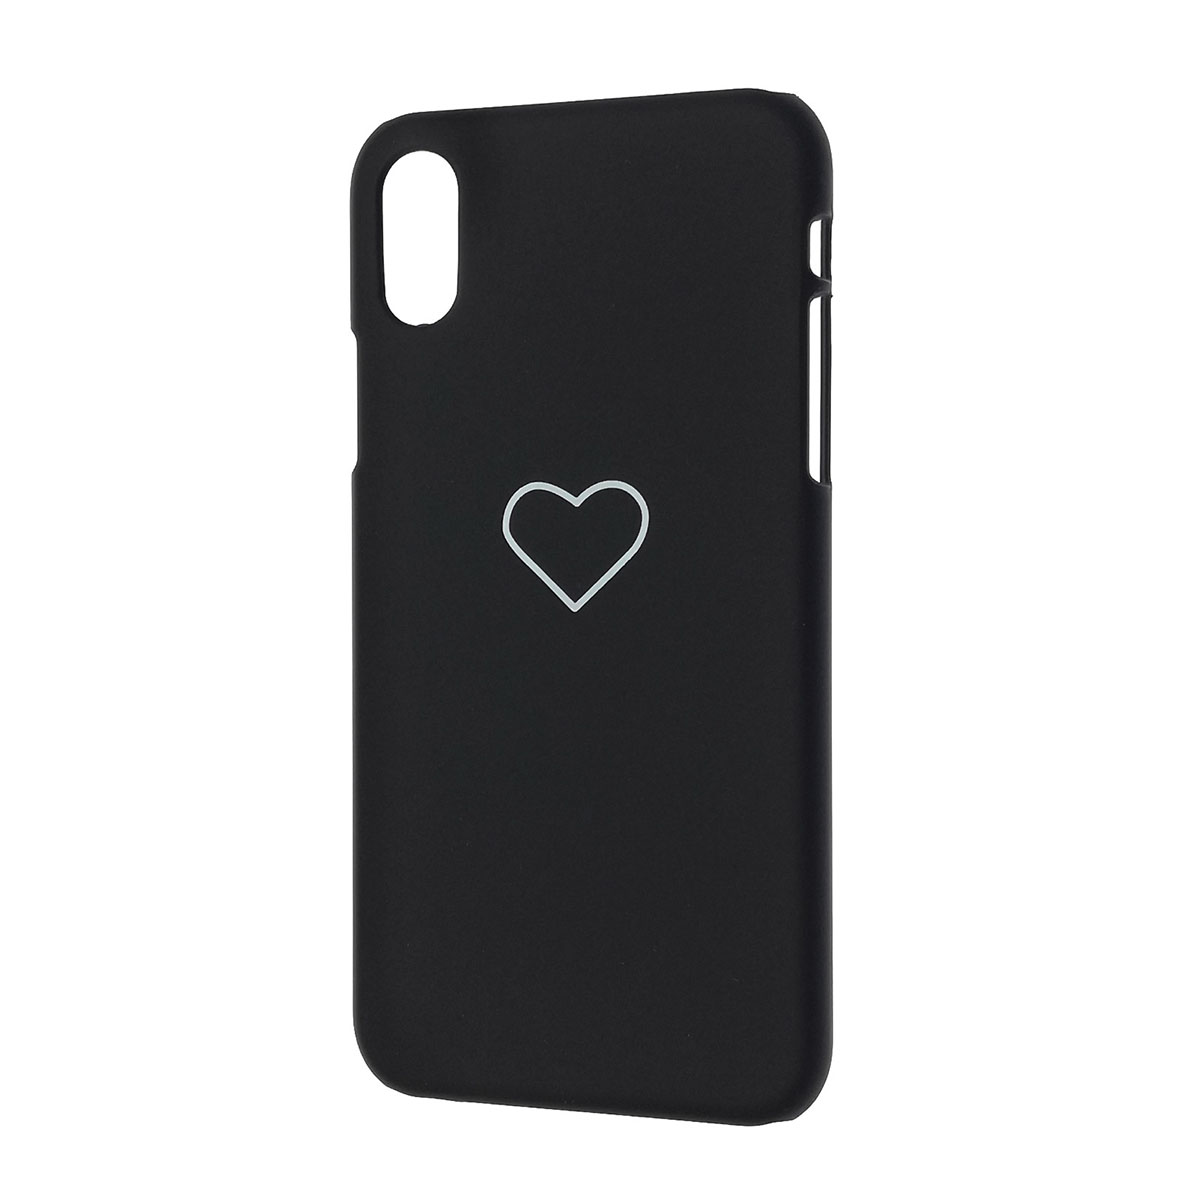 Чехол накладка для APPLE iPhone X, iPhone XS, пластик, матовый, рисунок Сердце, цвет черный.